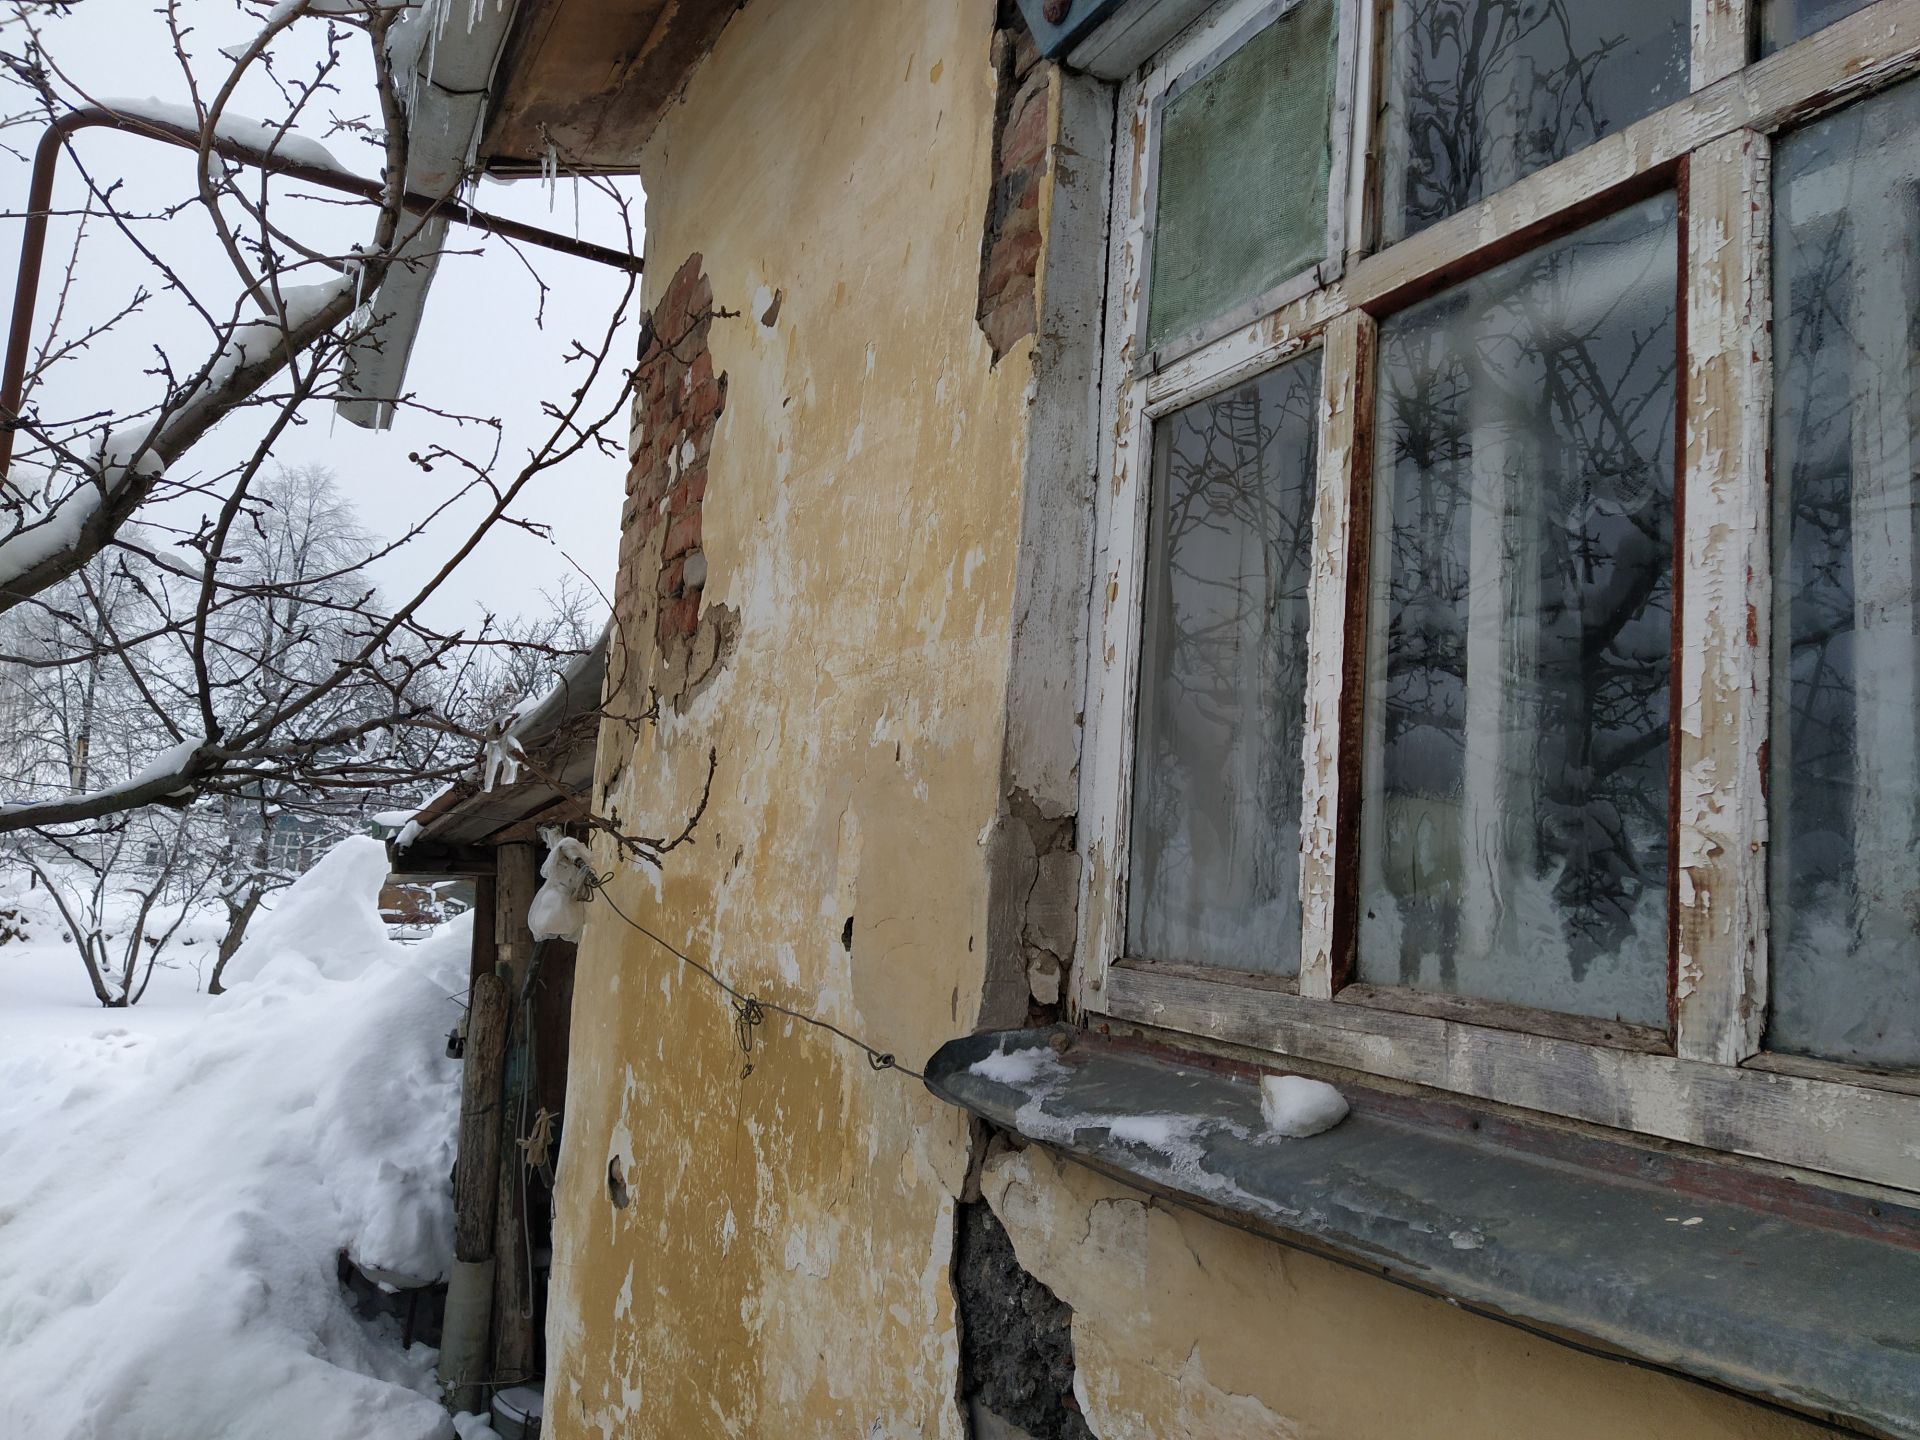 Труженица тыла из Чистополя мечтает о комфортных условиях